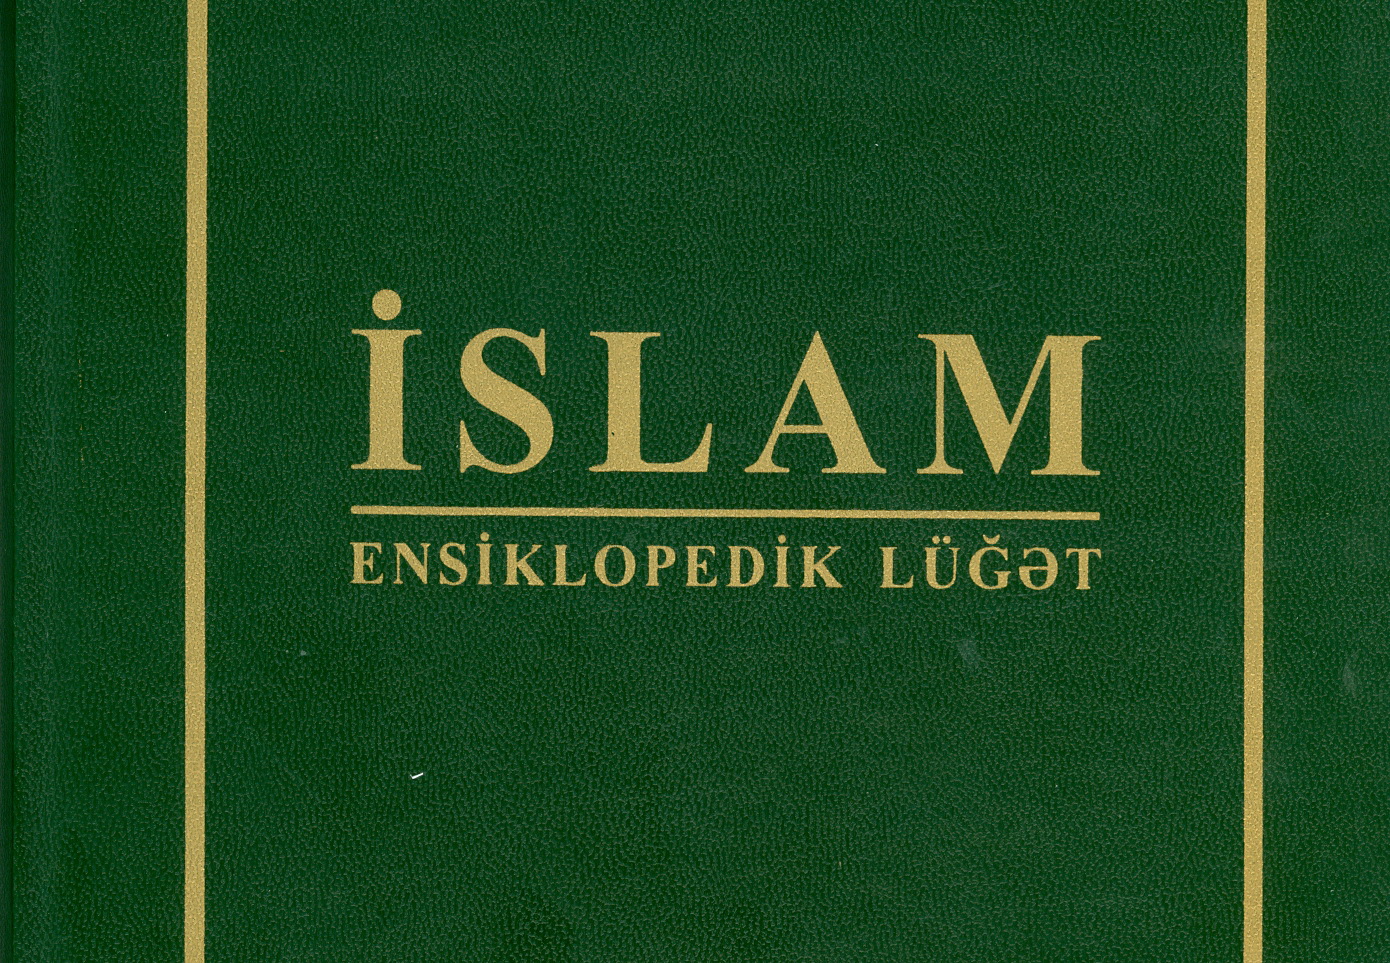 Энциклопедический словарь об исламе поступил в Центральную научную библиотеку НАНА